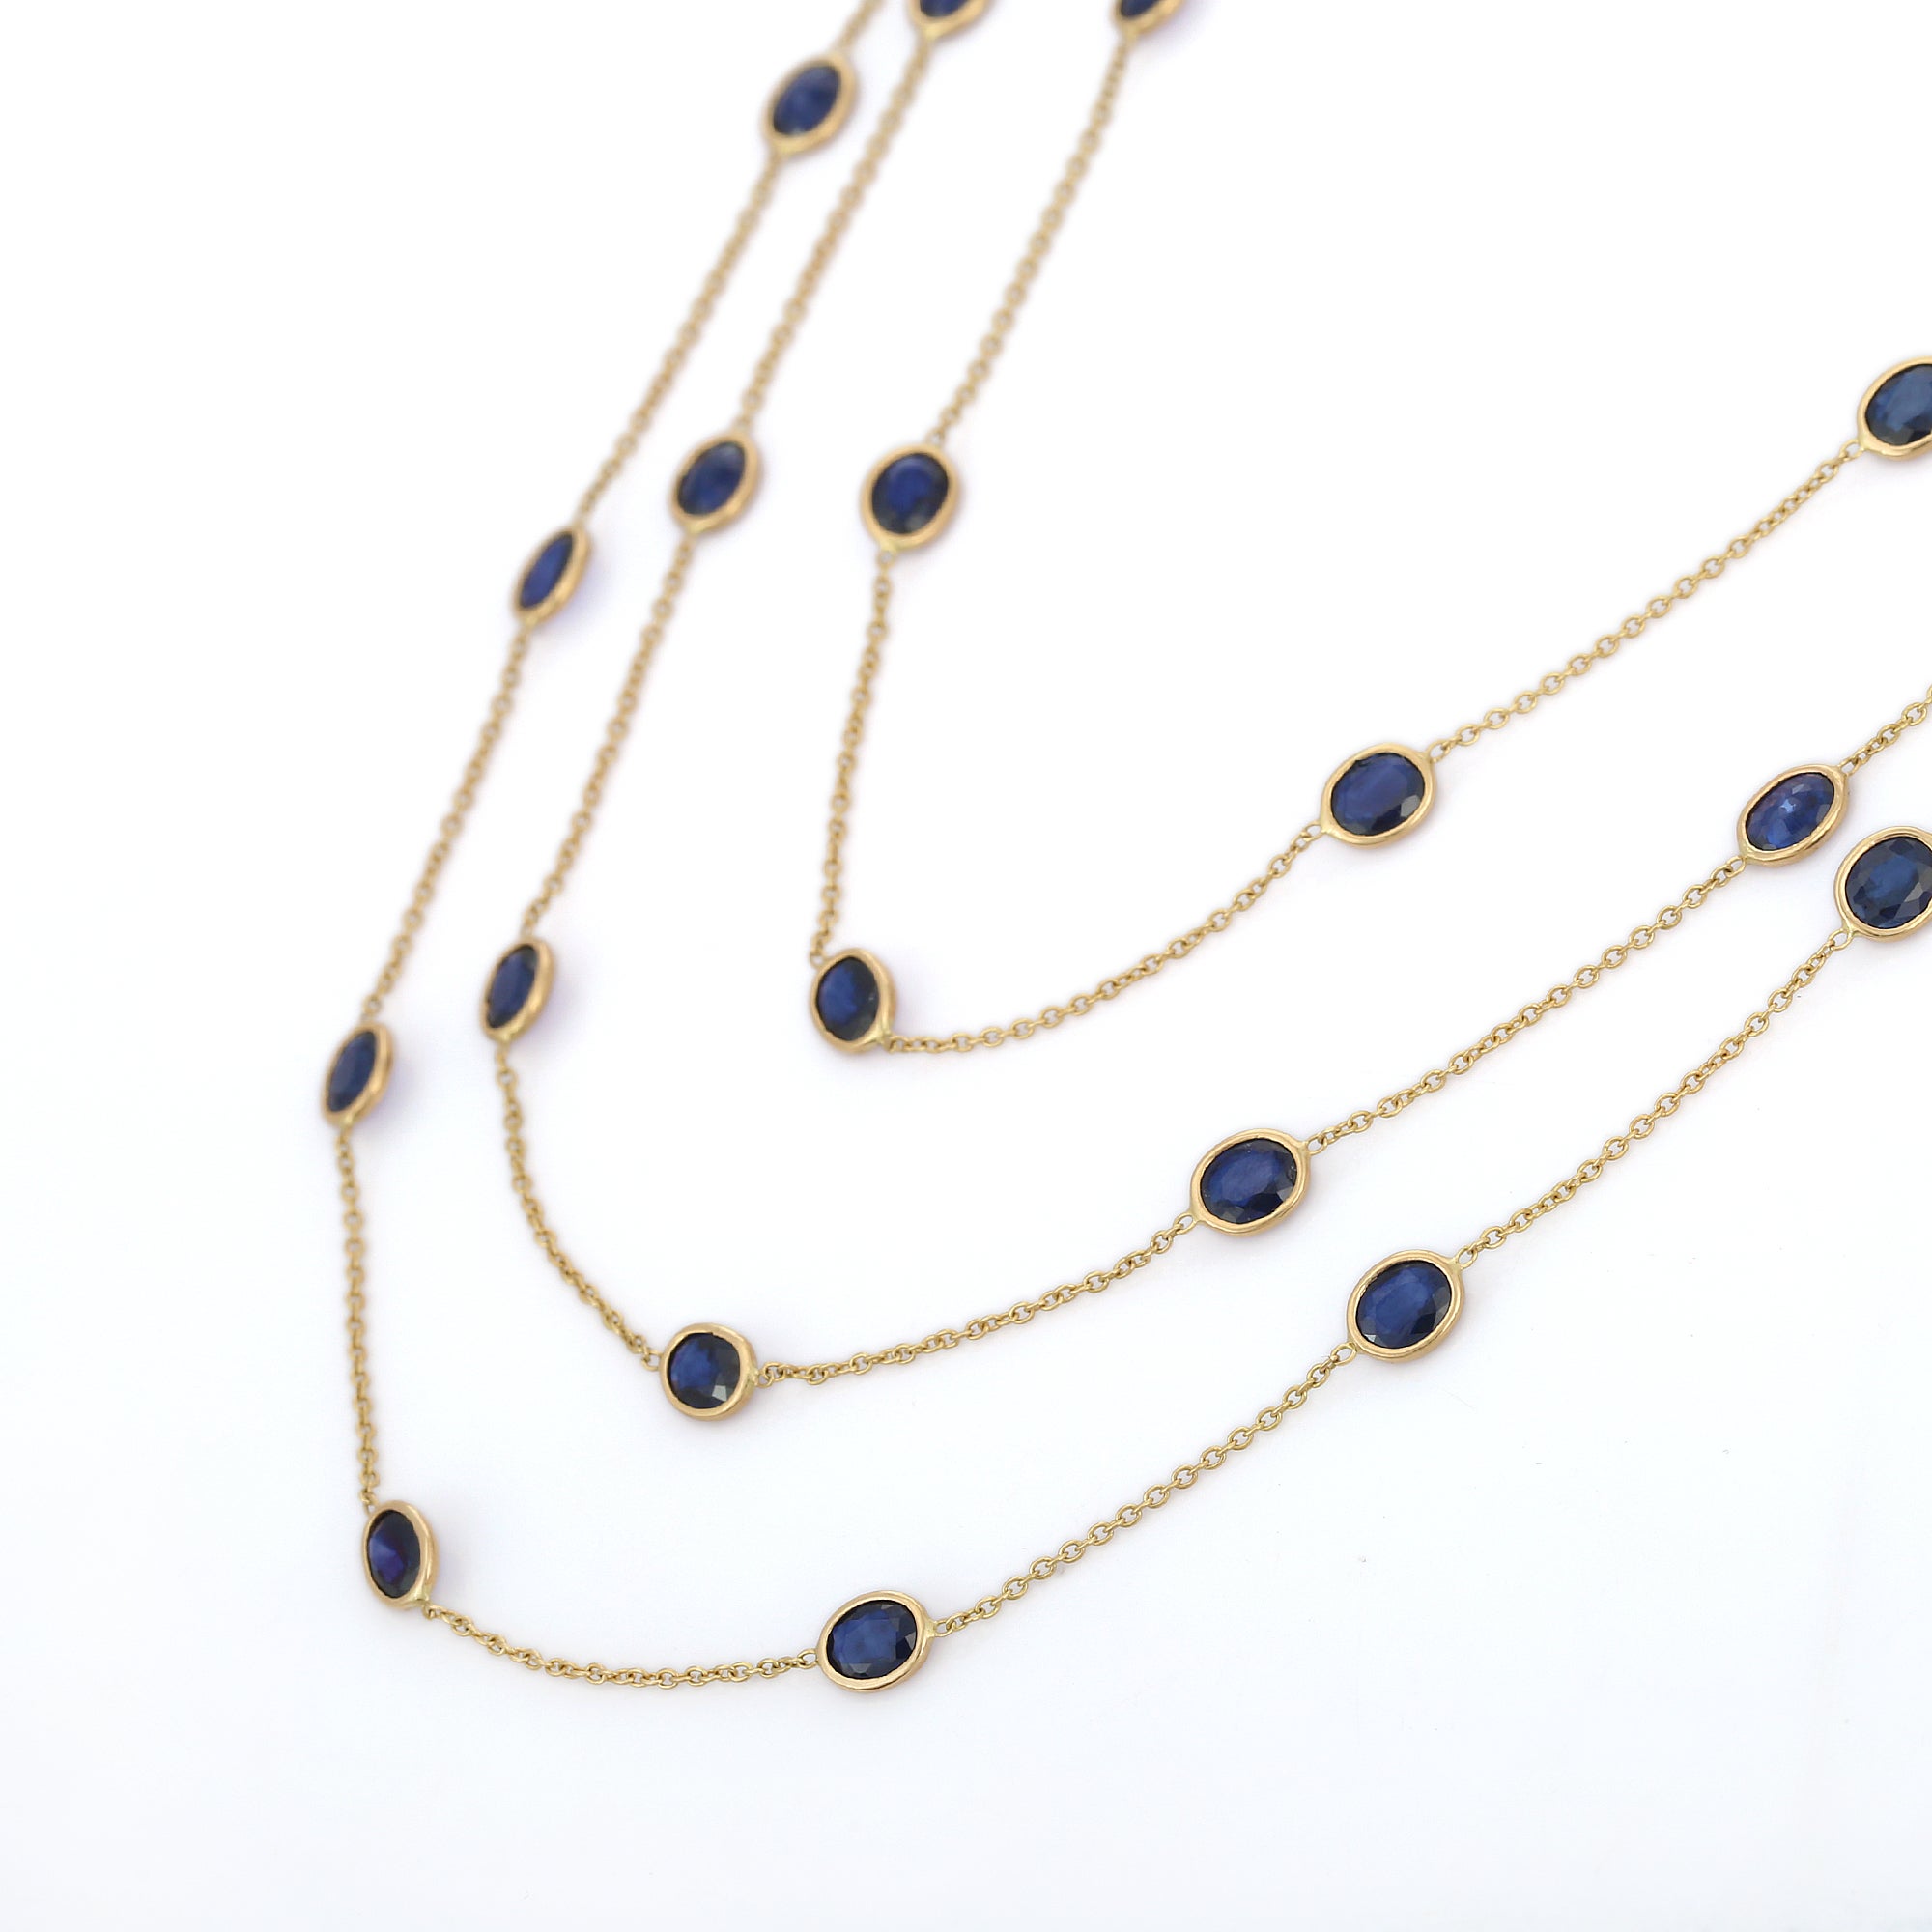 Blaue Saphir-Halskette aus 18 Karat Gold, besetzt mit blauen Saphiren im Ovalschliff.
Ergänzen Sie Ihren Look mit dieser eleganten blauen Saphir-Perlenkette. Dieses atemberaubende Schmuckstück wertet einen Freizeitlook oder ein elegantes Outfit